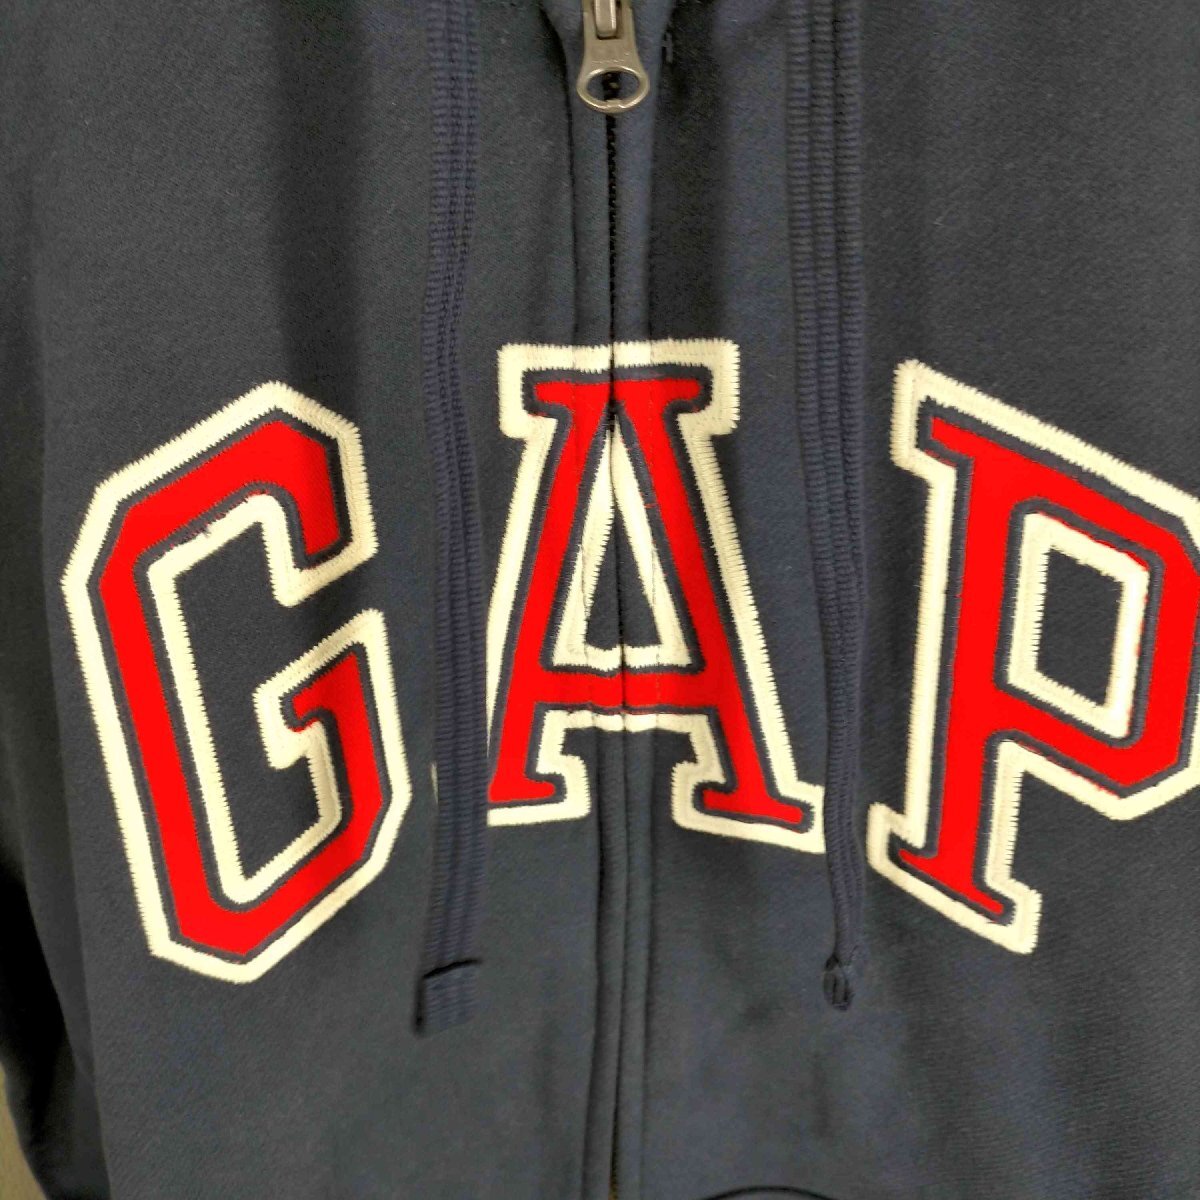 Gap(ギャップ) GAPロゴ カーボナイズド フレンチテリー フルジップ パーカー メンズ import 中古 古着 0907_画像5